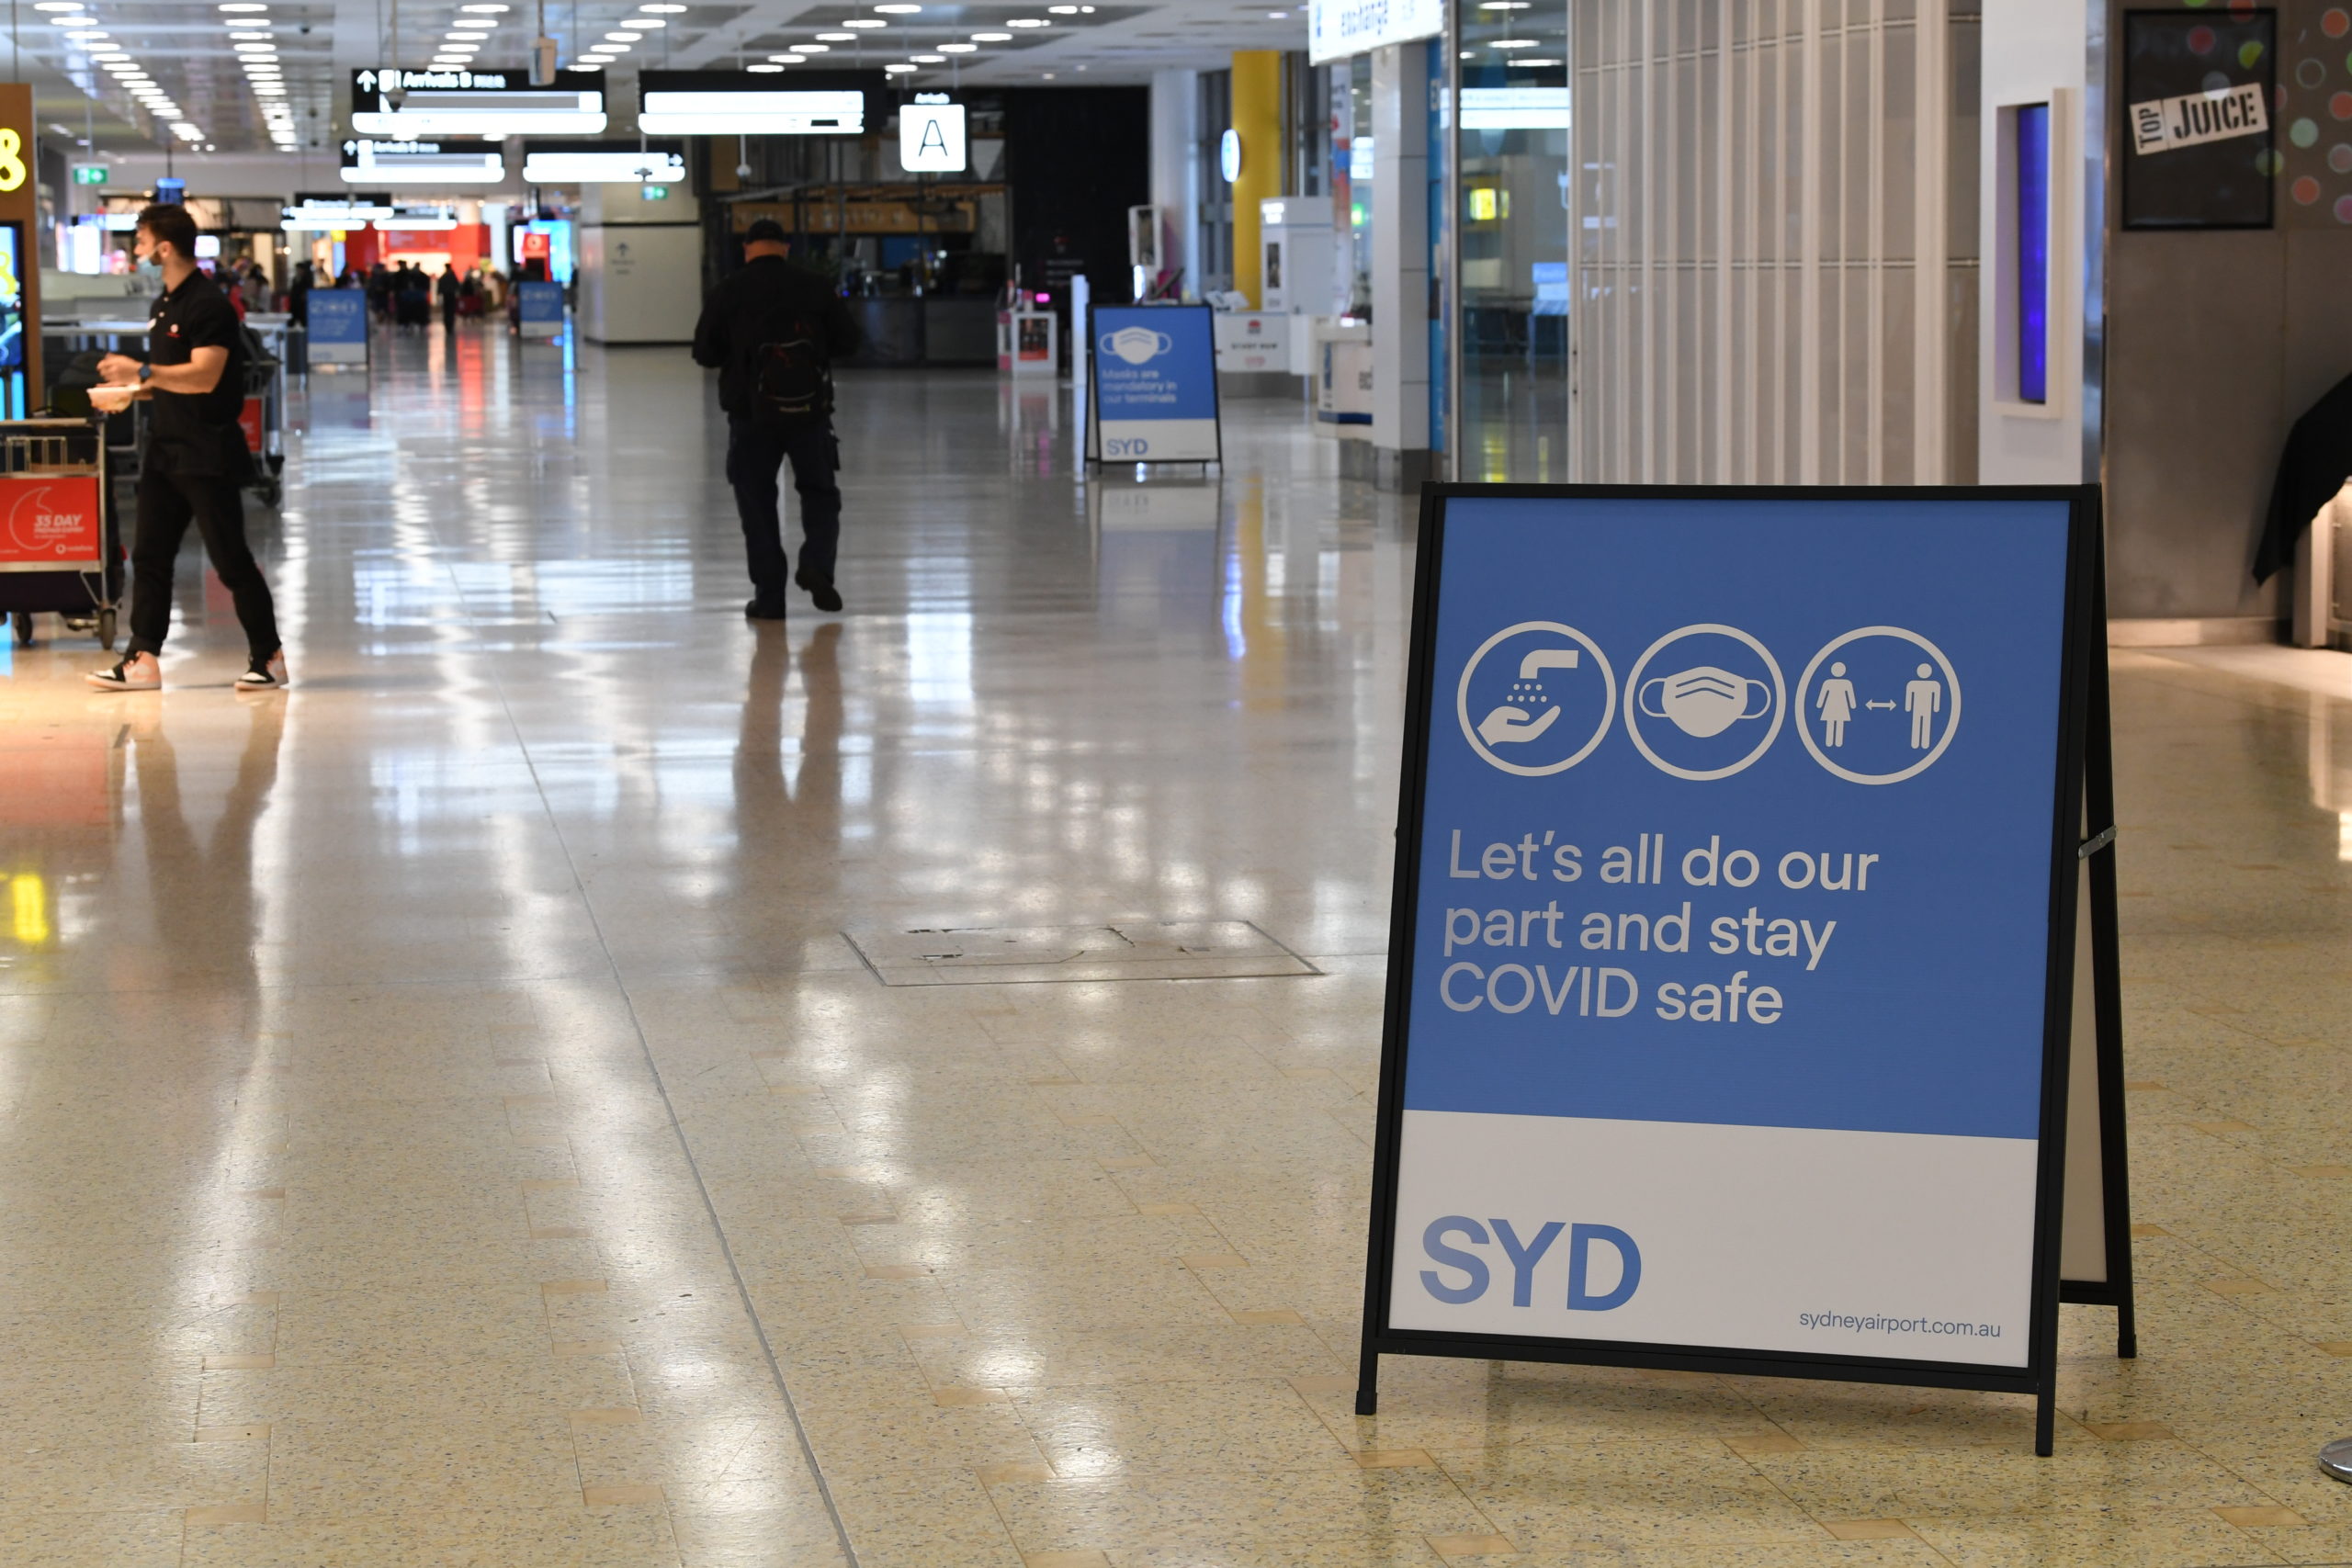 由于欧米克隆，澳大利亚的哪些COVID限制改变了?